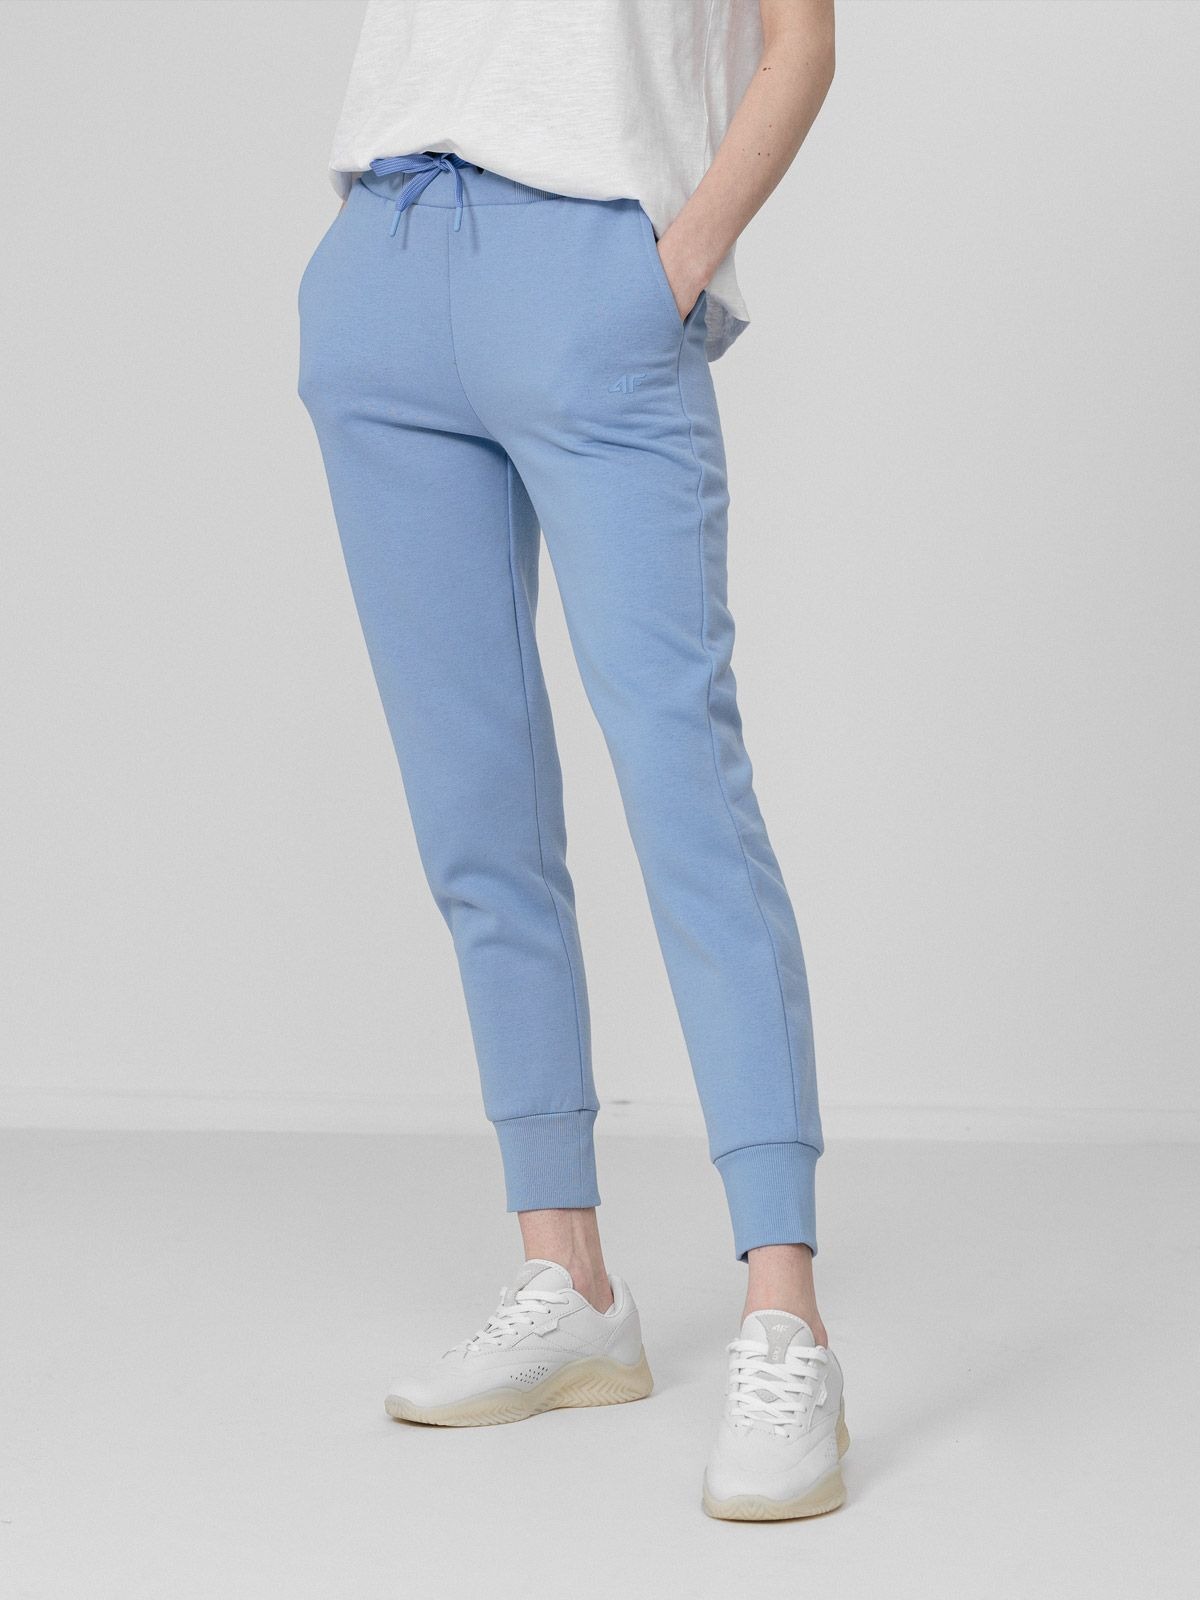 фото Спортивные брюки женские 4f nosh4-spdd350 синие xl